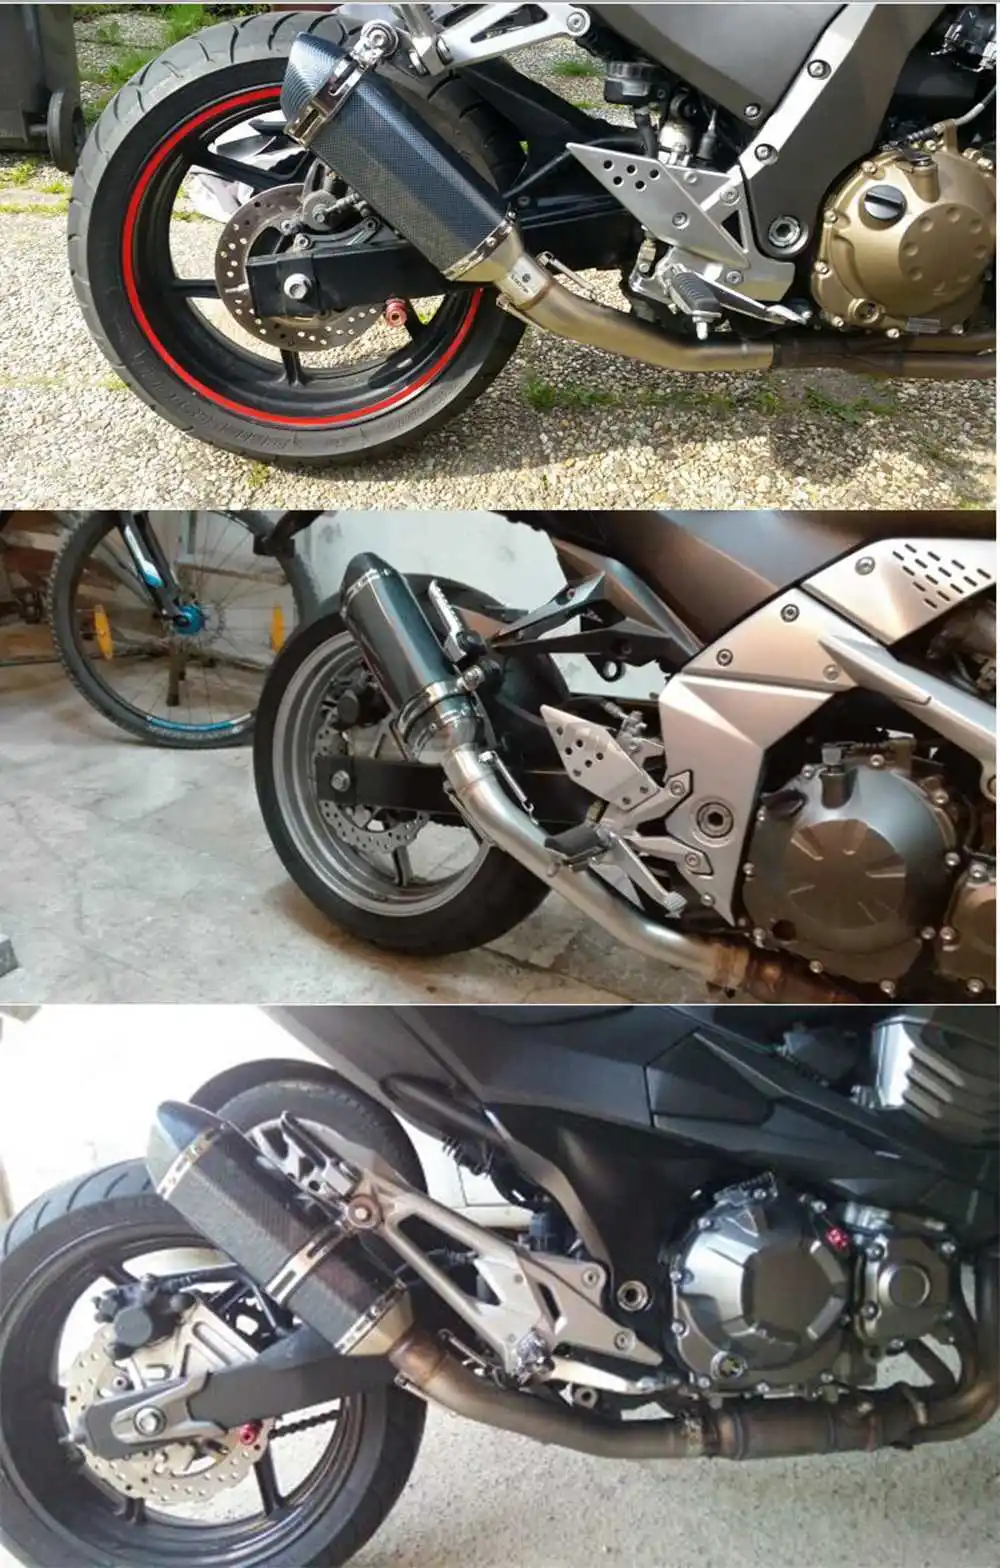 36-51 мм Универсальный мотоцикл выхлопной модифицированный глушитель дБ убийца для Akrapovic Honda Kawasaki Yamaha Suzuki ATV Dirt Pit